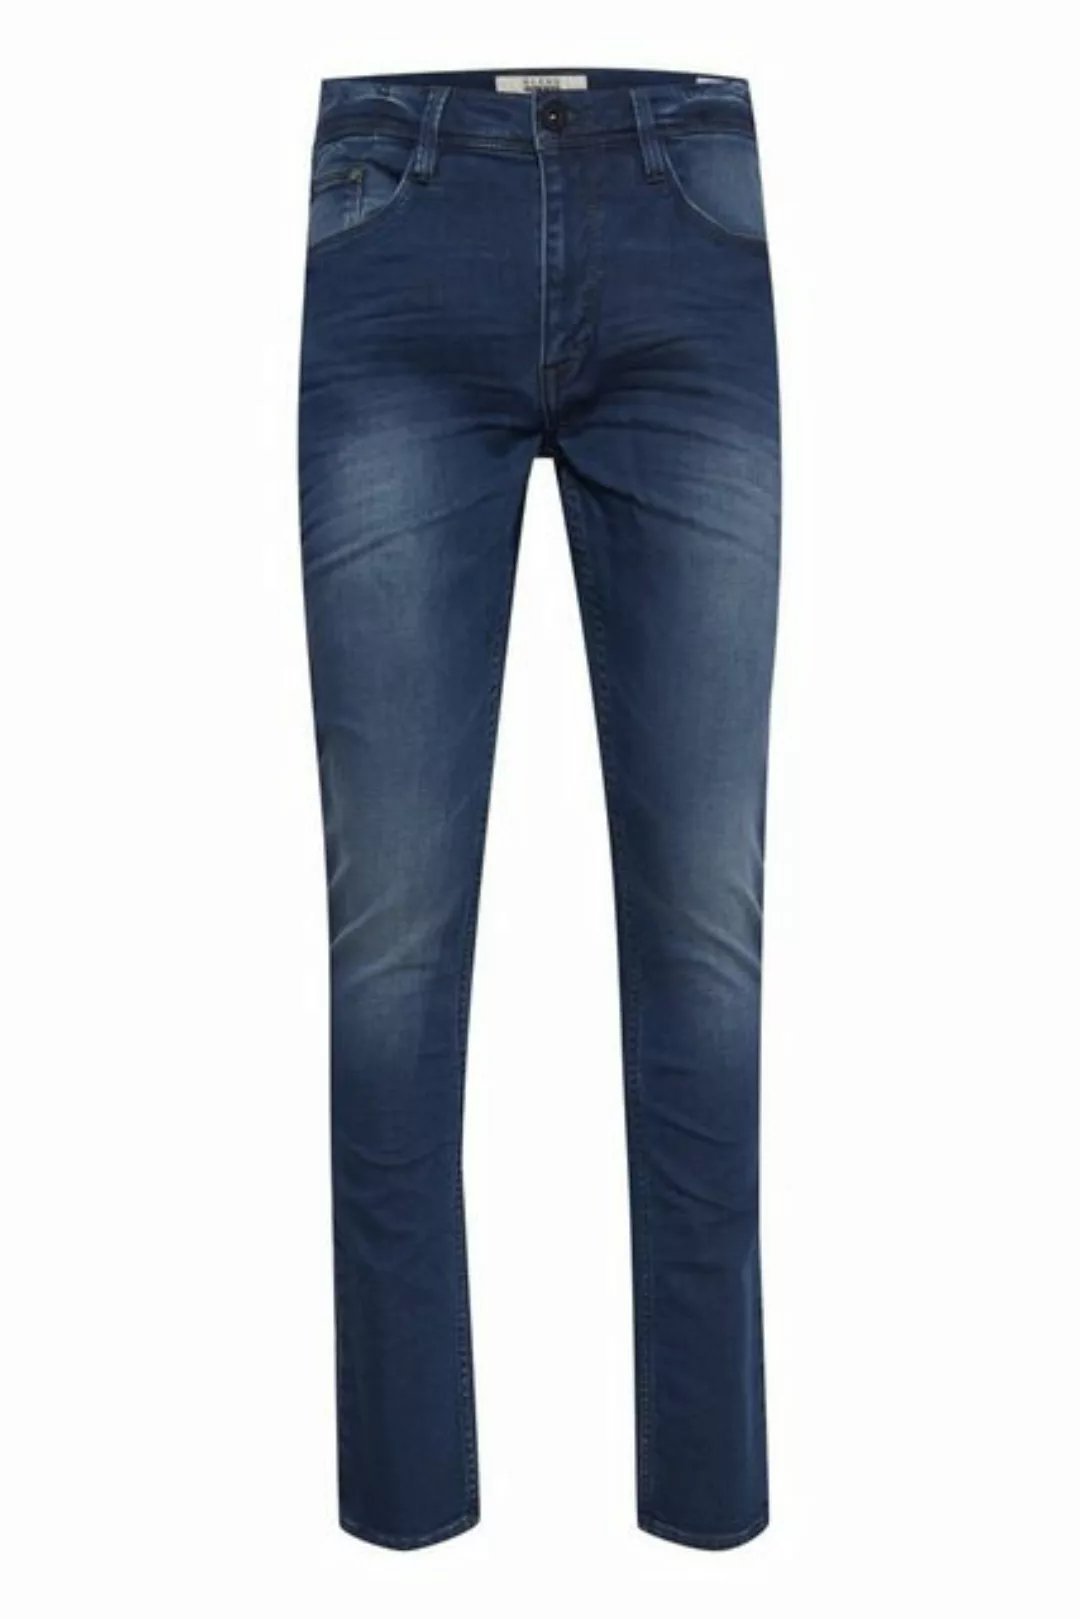 Blend 5-Pocket-Jeans BLEND JEANS JET denim middle blue used wash 20709221.7 günstig online kaufen